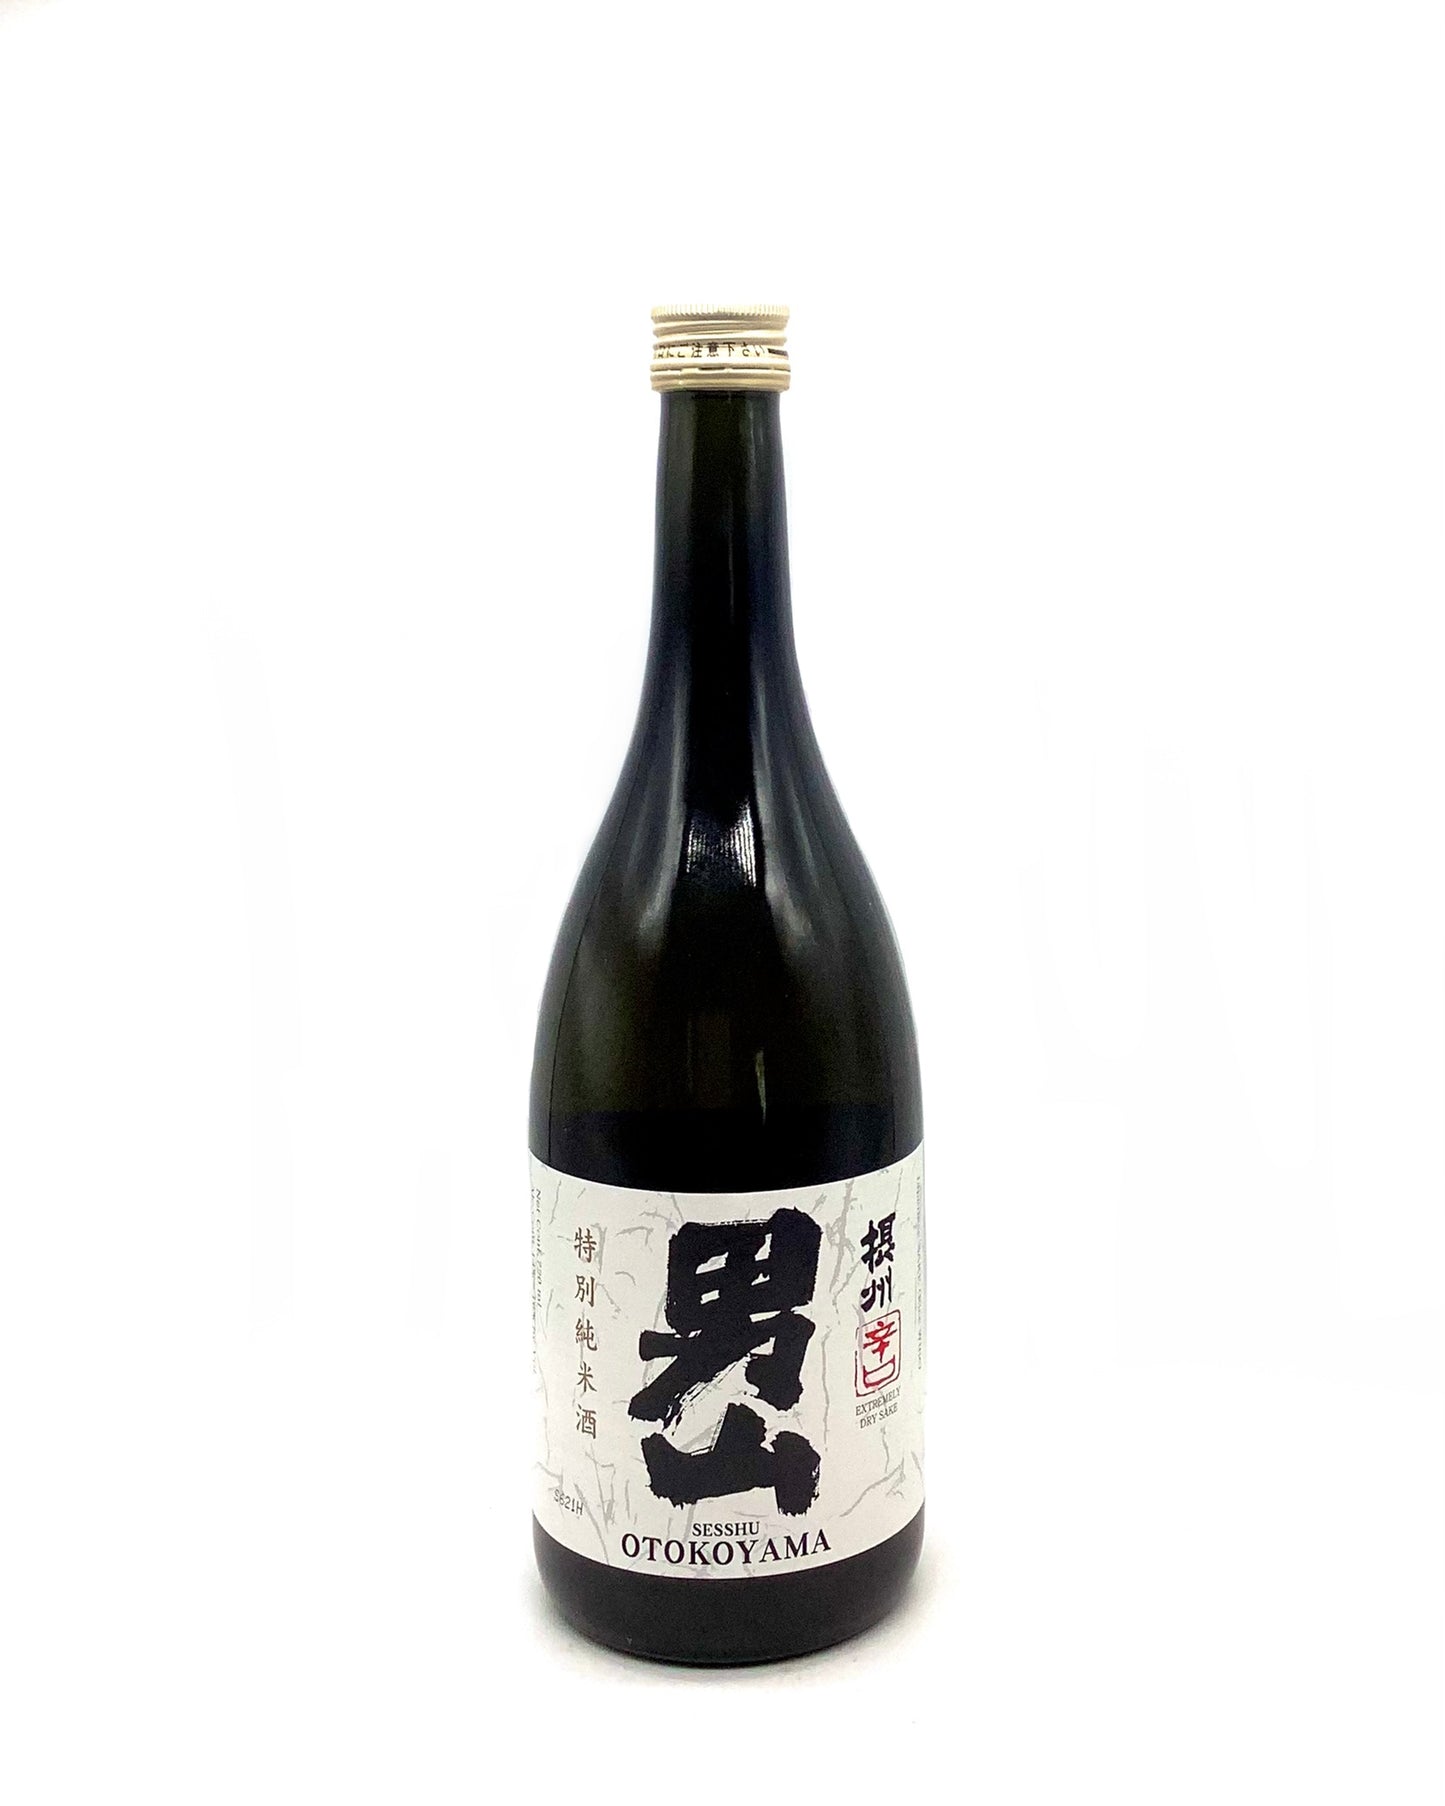 Sesshu Otokoyama Tokubetsu (Junmai) Sake 720ml sake